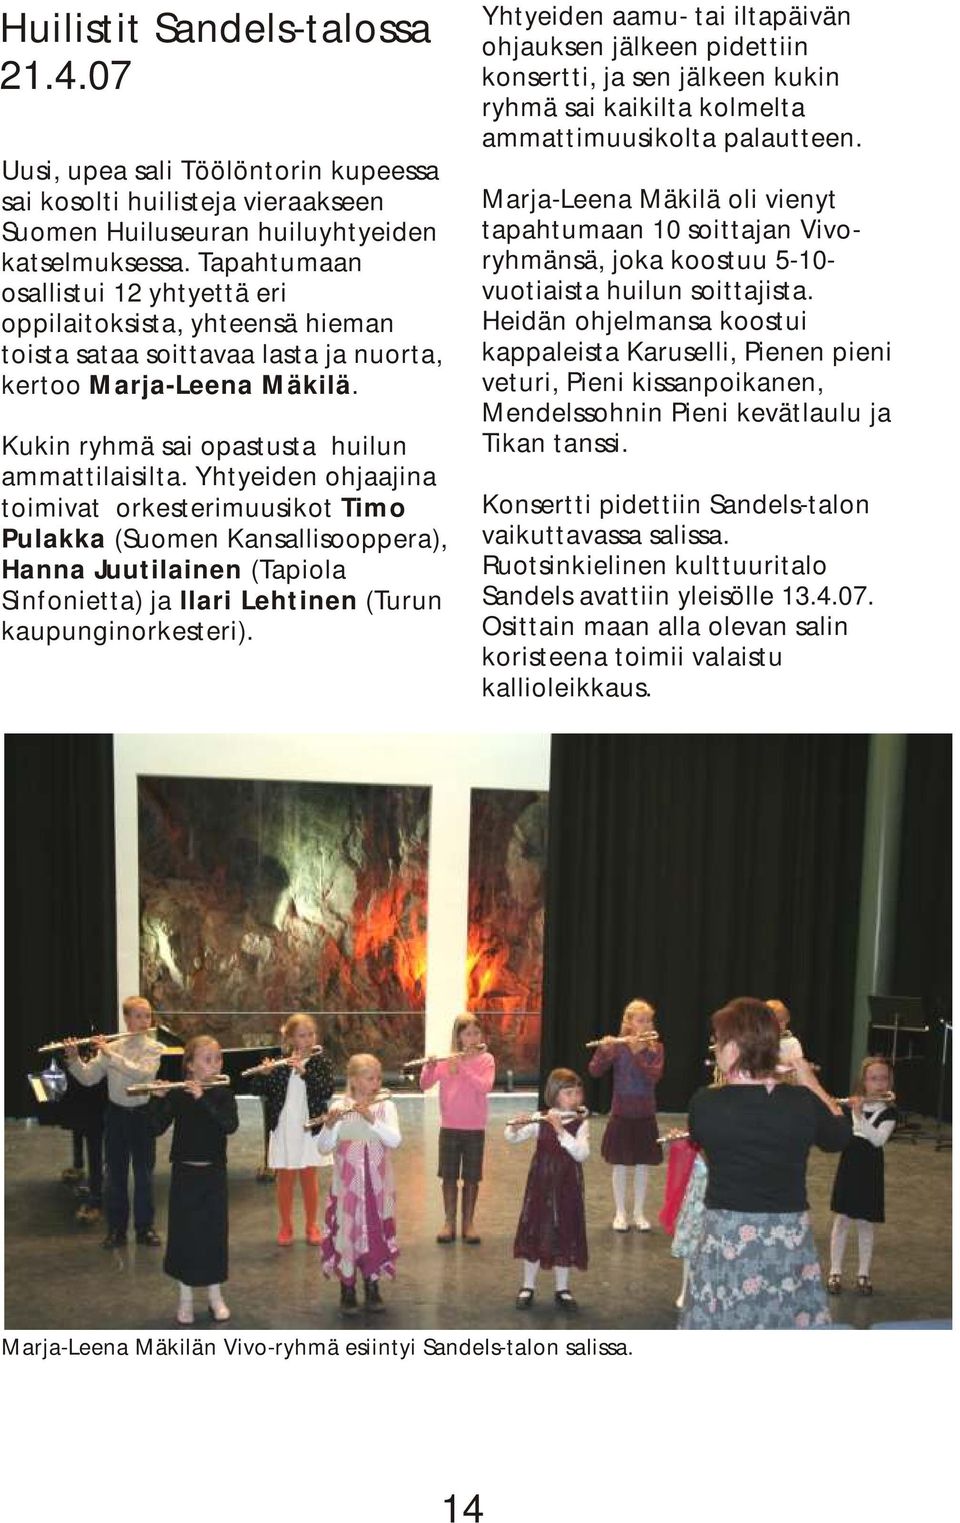 Yhtyeiden ohjaajina toimivat orkesterimuusikot Timo Pulakka (Suomen Kansallisooppera), Hanna Juutilainen (Tapiola Sinfonietta) ja Ilari Lehtinen (Turun kaupunginorkesteri).